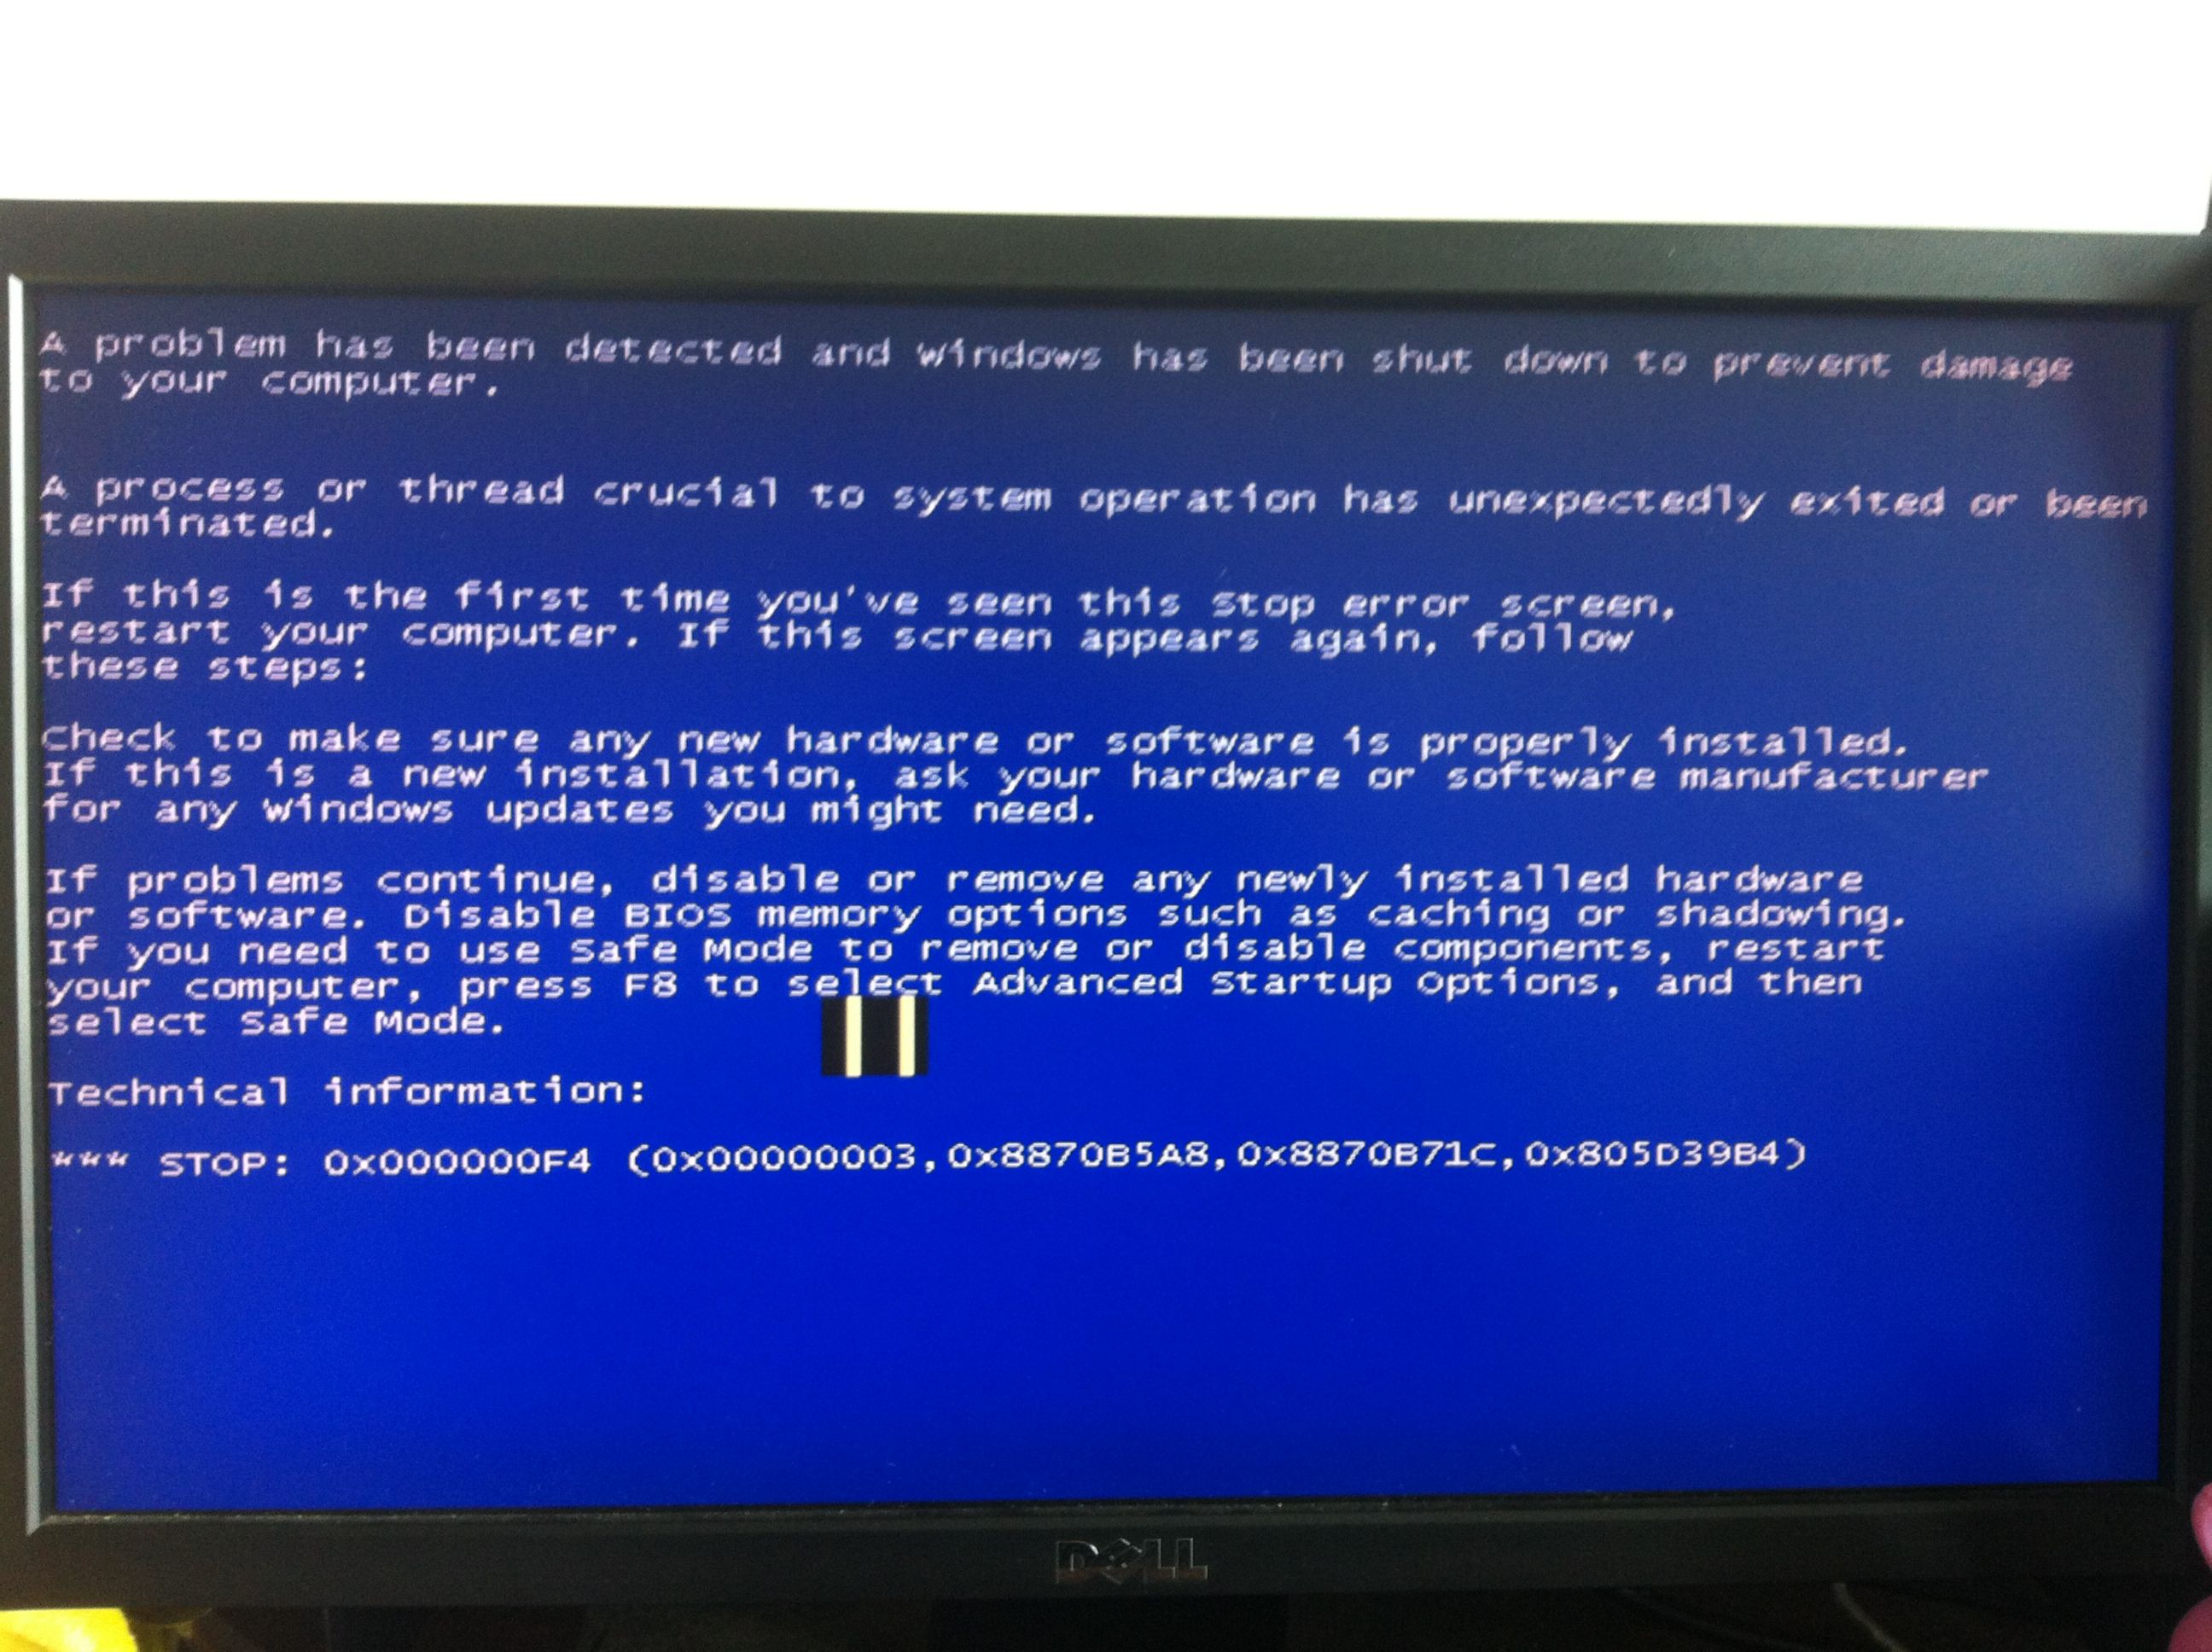 我的电脑经常蓝屏是什么原因引起的呢?